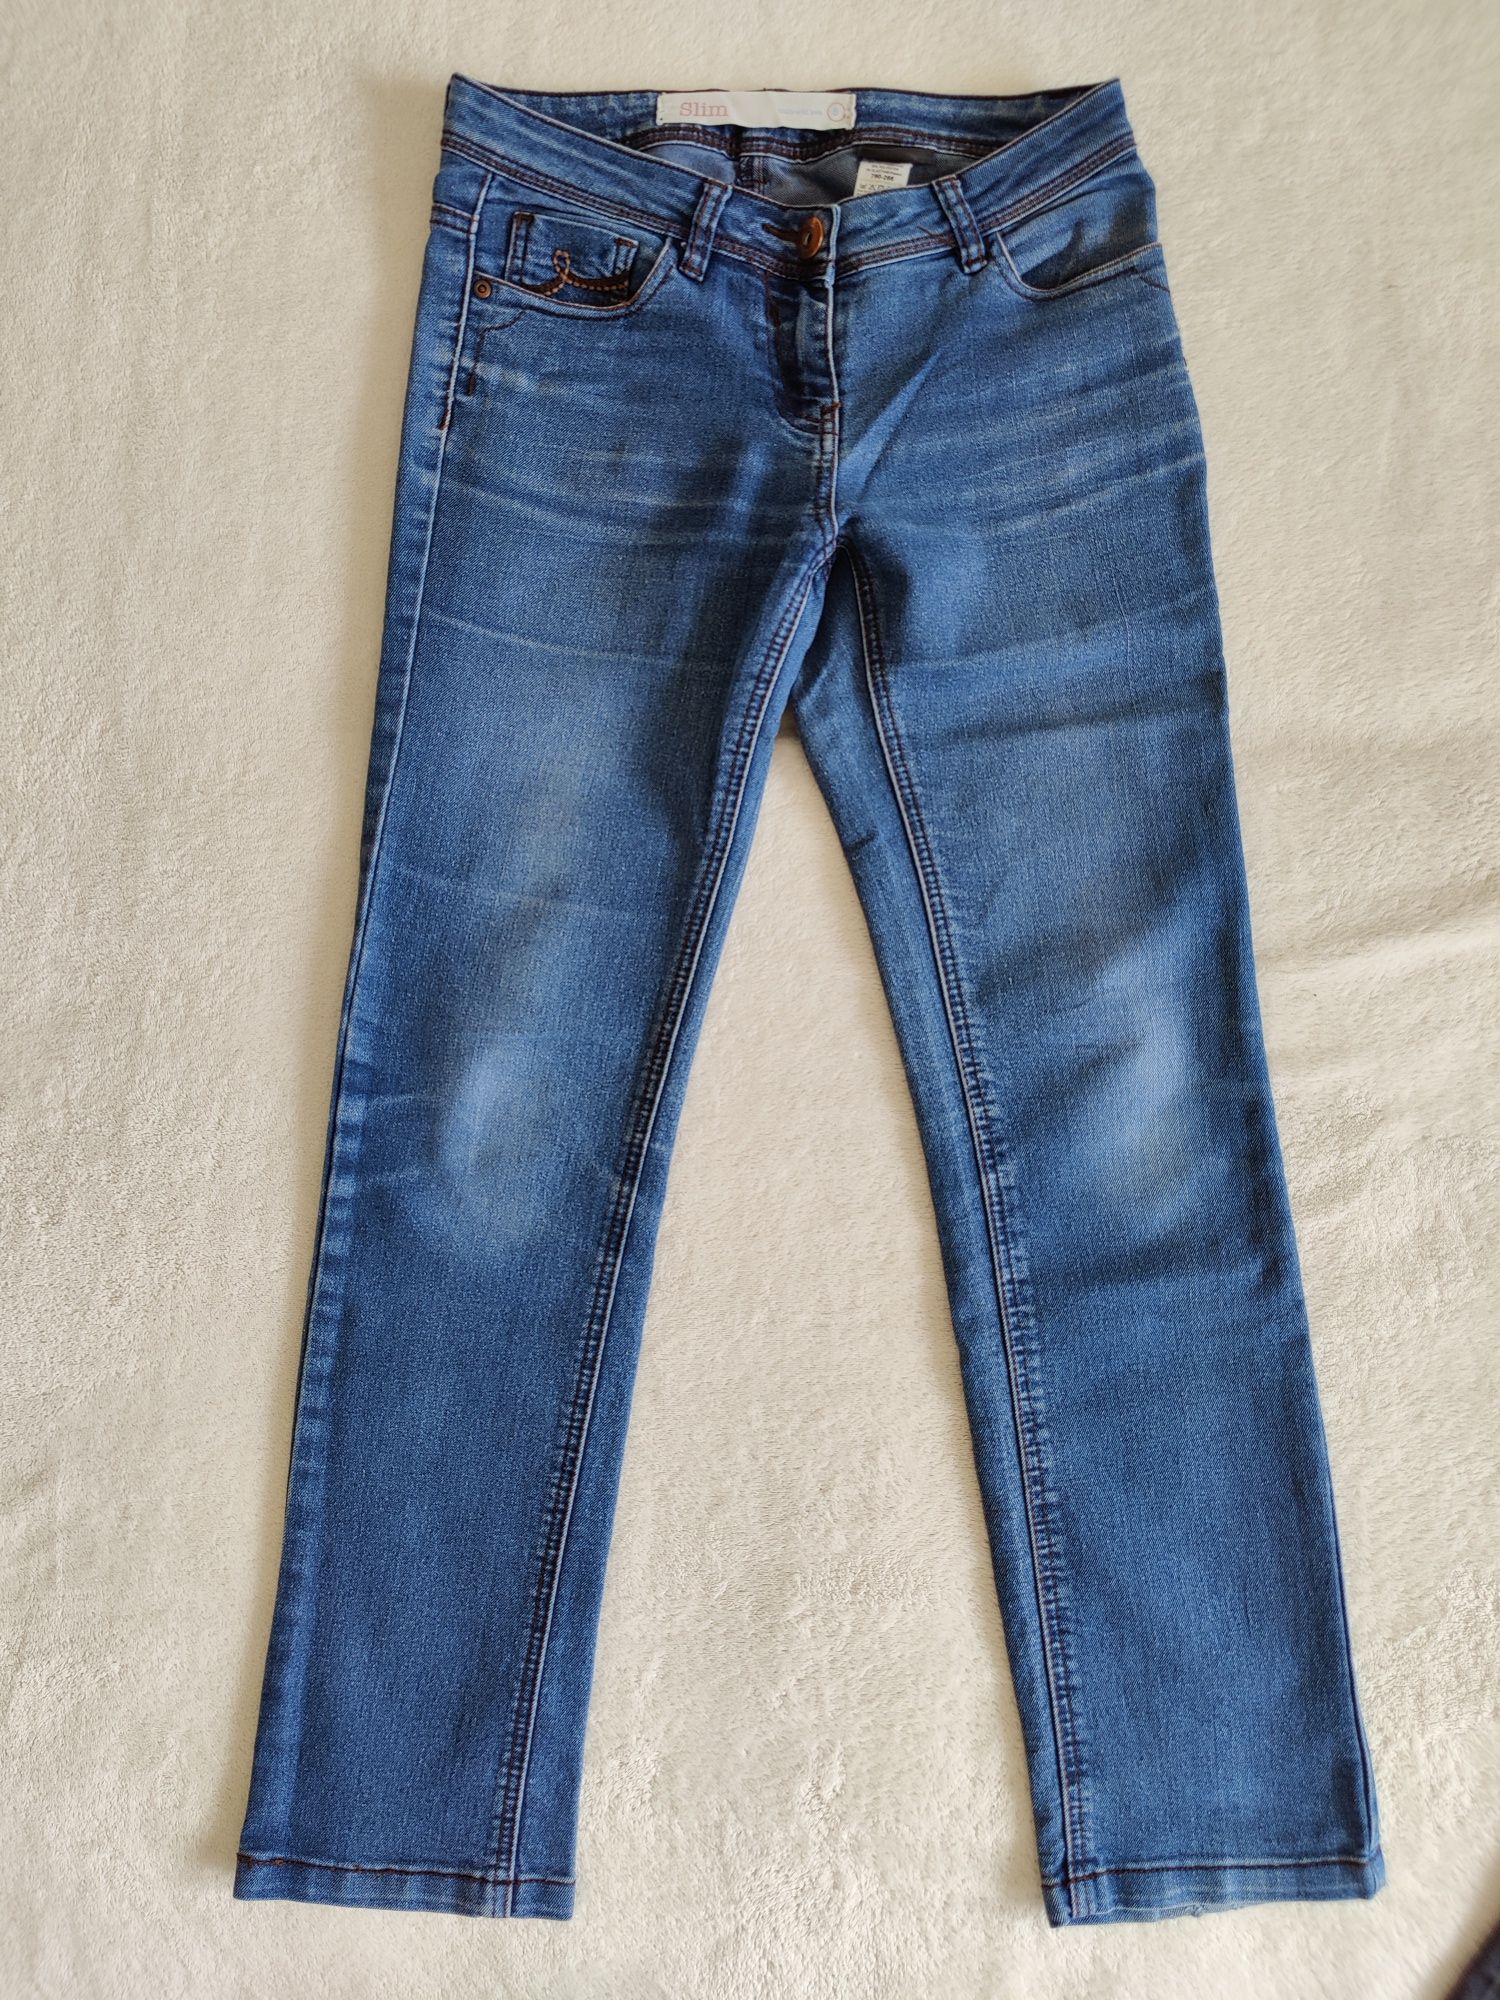 Zestaw spodni jeansowych 36 S m.in. marki H&M Next